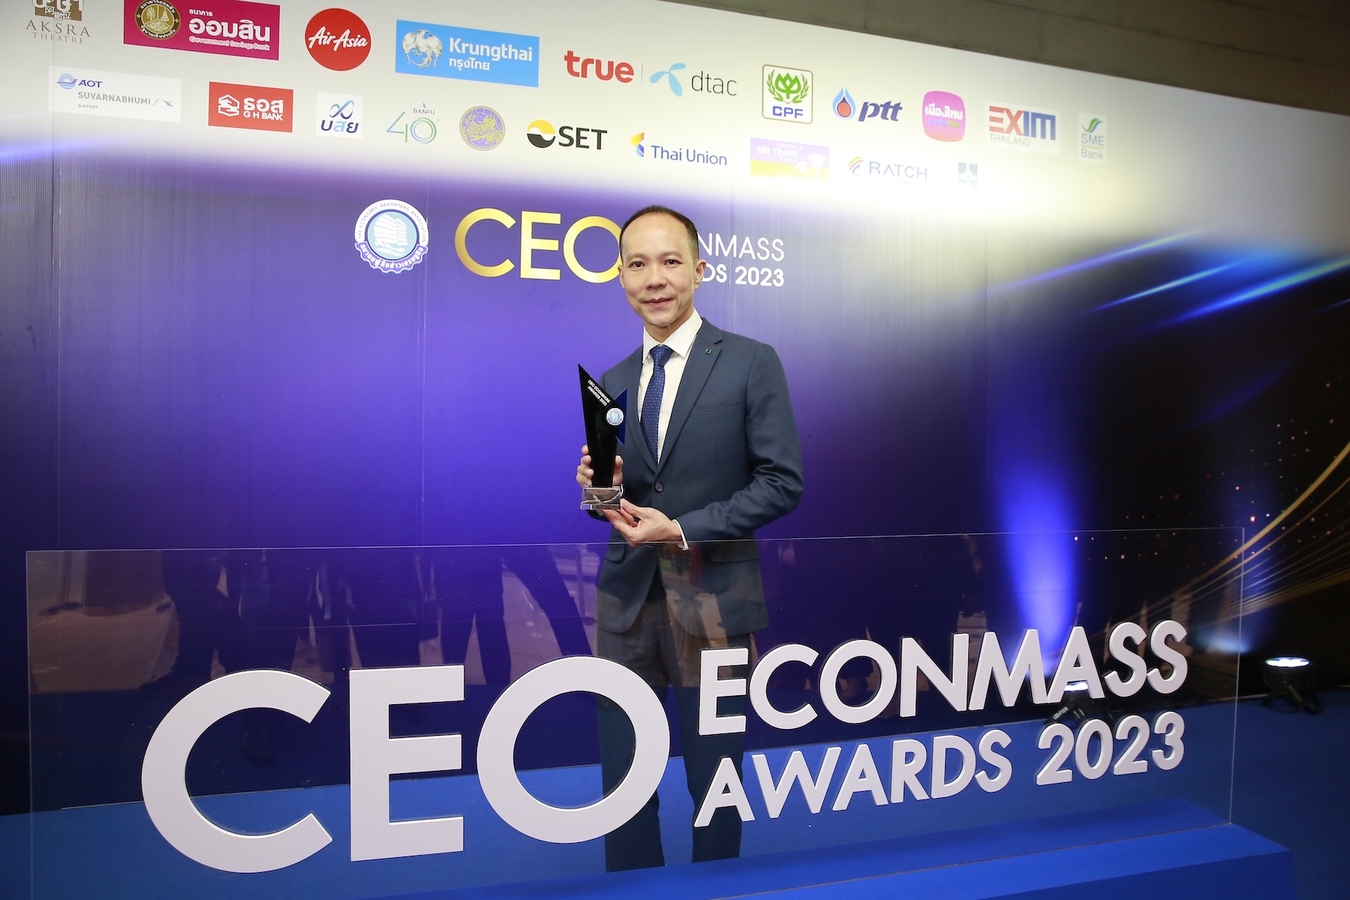 SYMC-CEO ECONMASS Awards 2023-Alex Loh